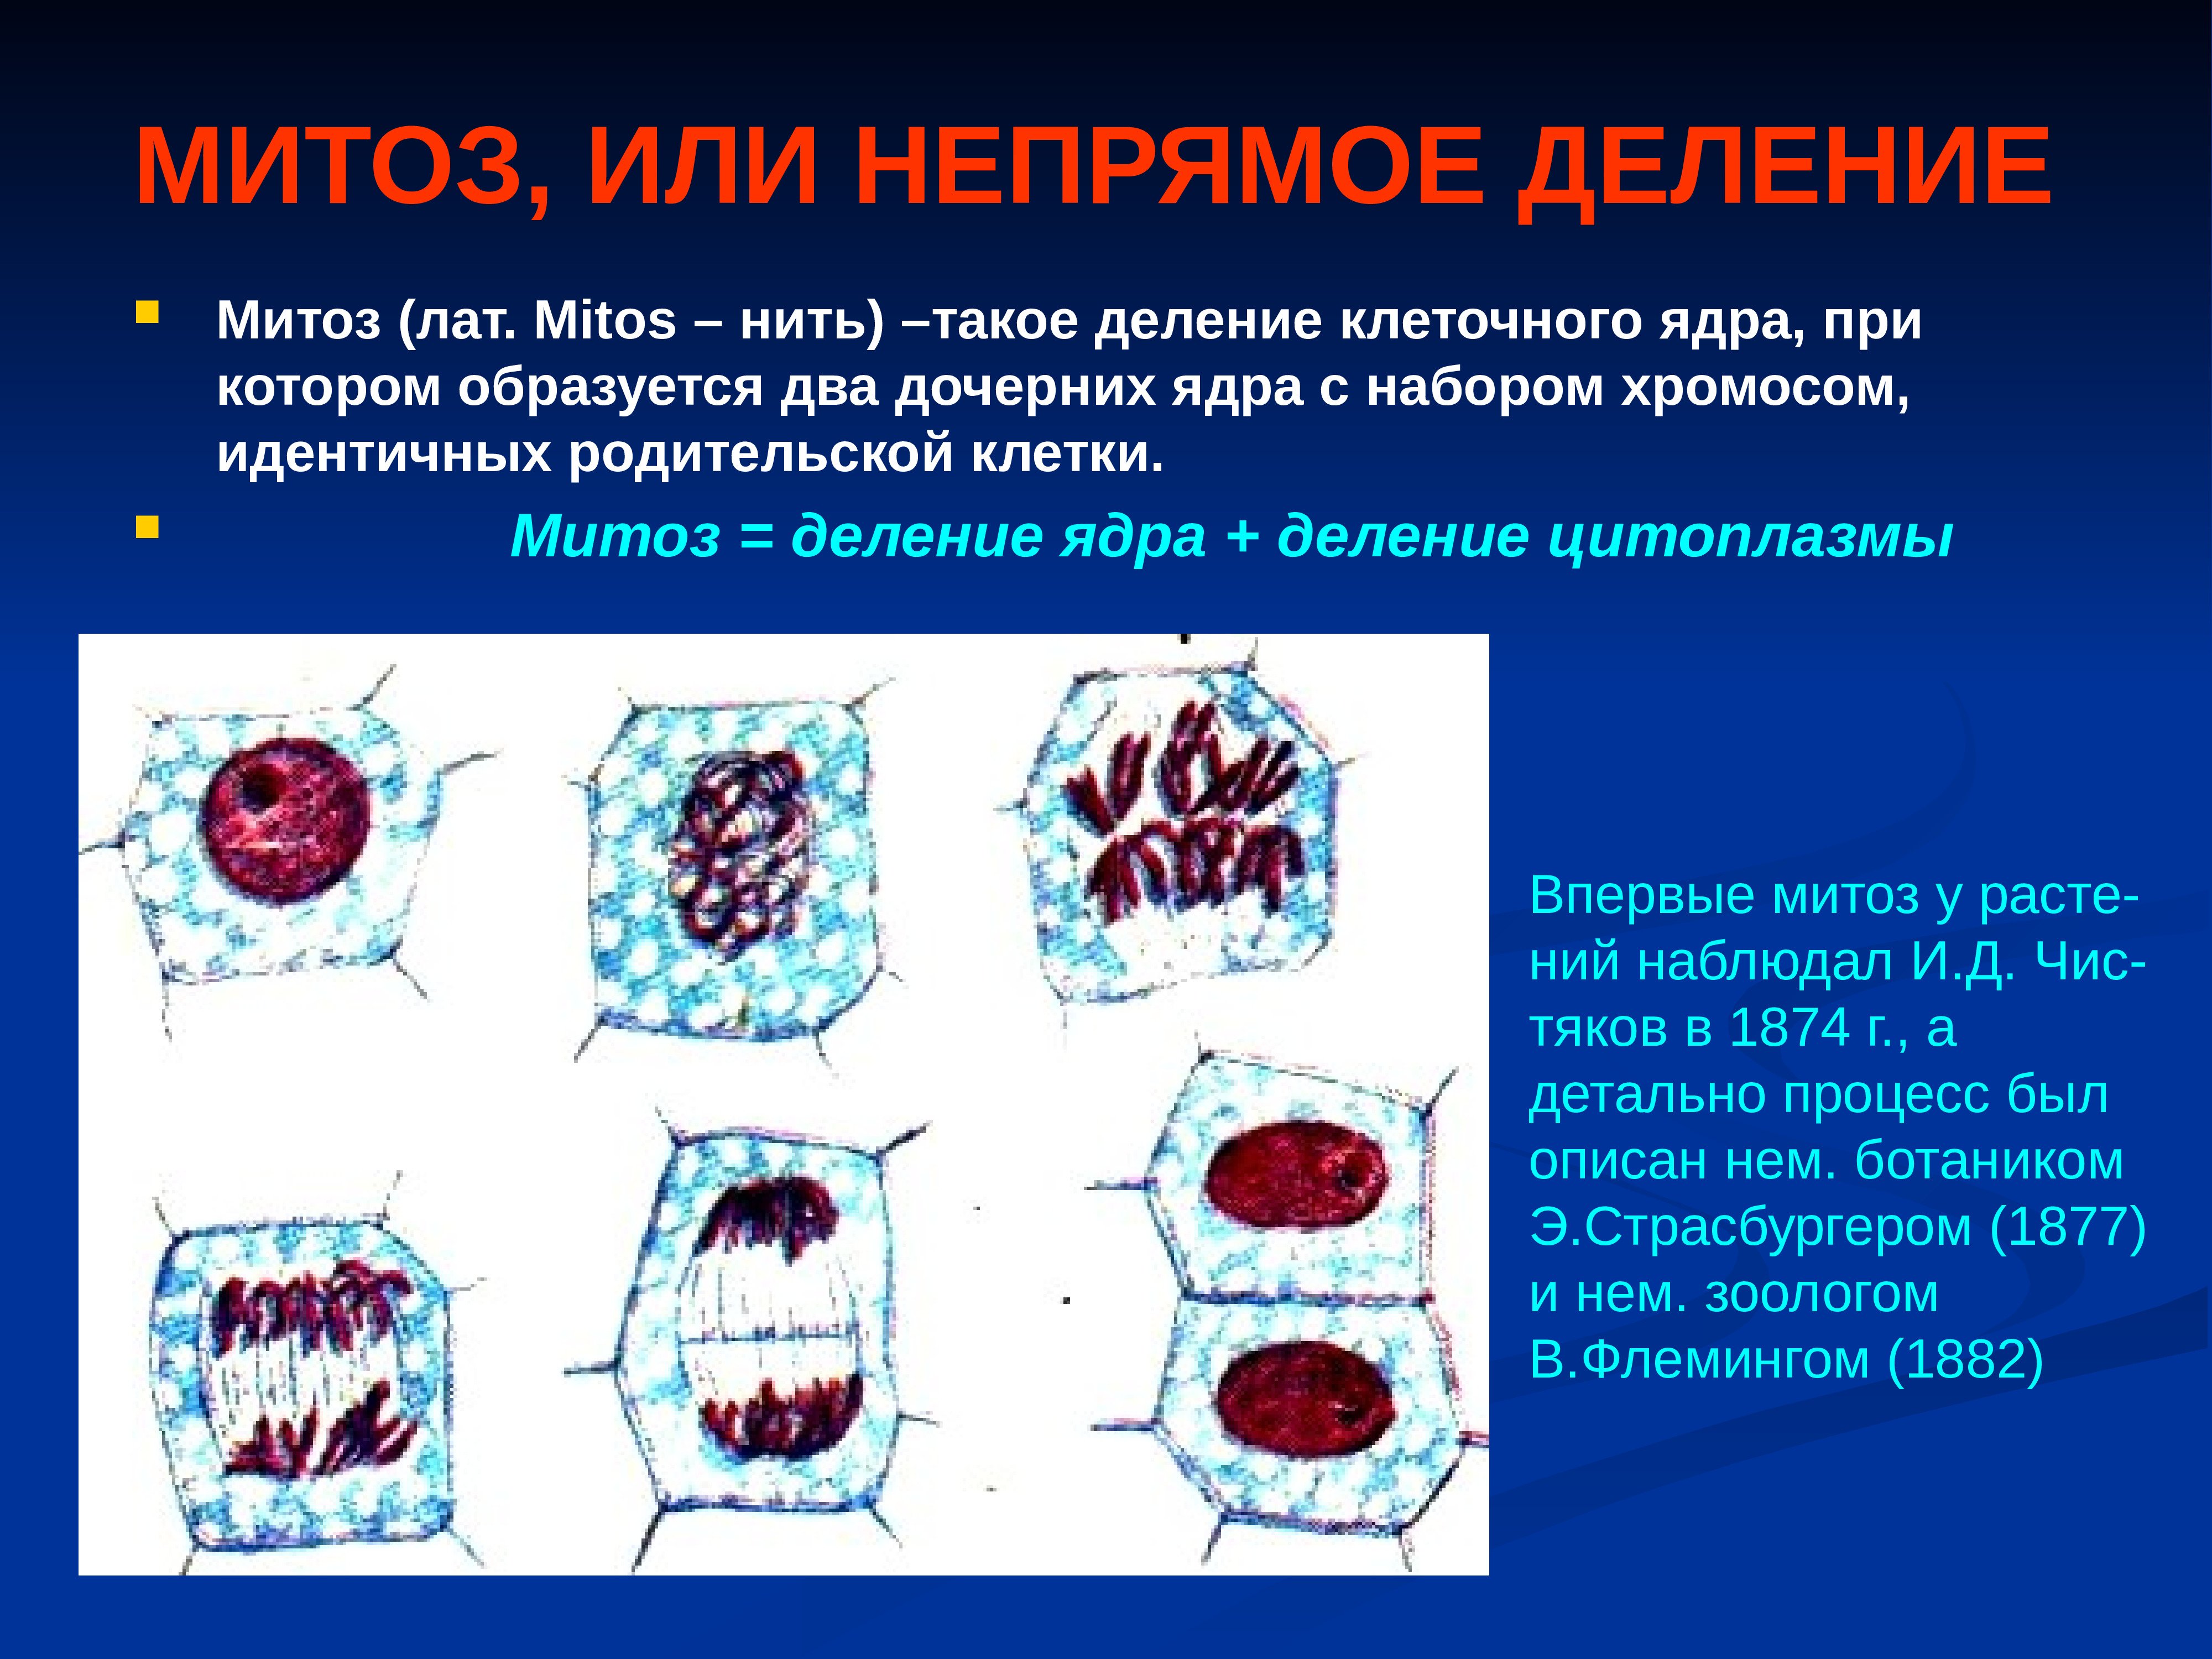 Деление клеток спорогенной ткани. Митоз Непрямое деление клетки. Размножение митоз. Митоз Непрямое деление. Митотическое деление клетки.